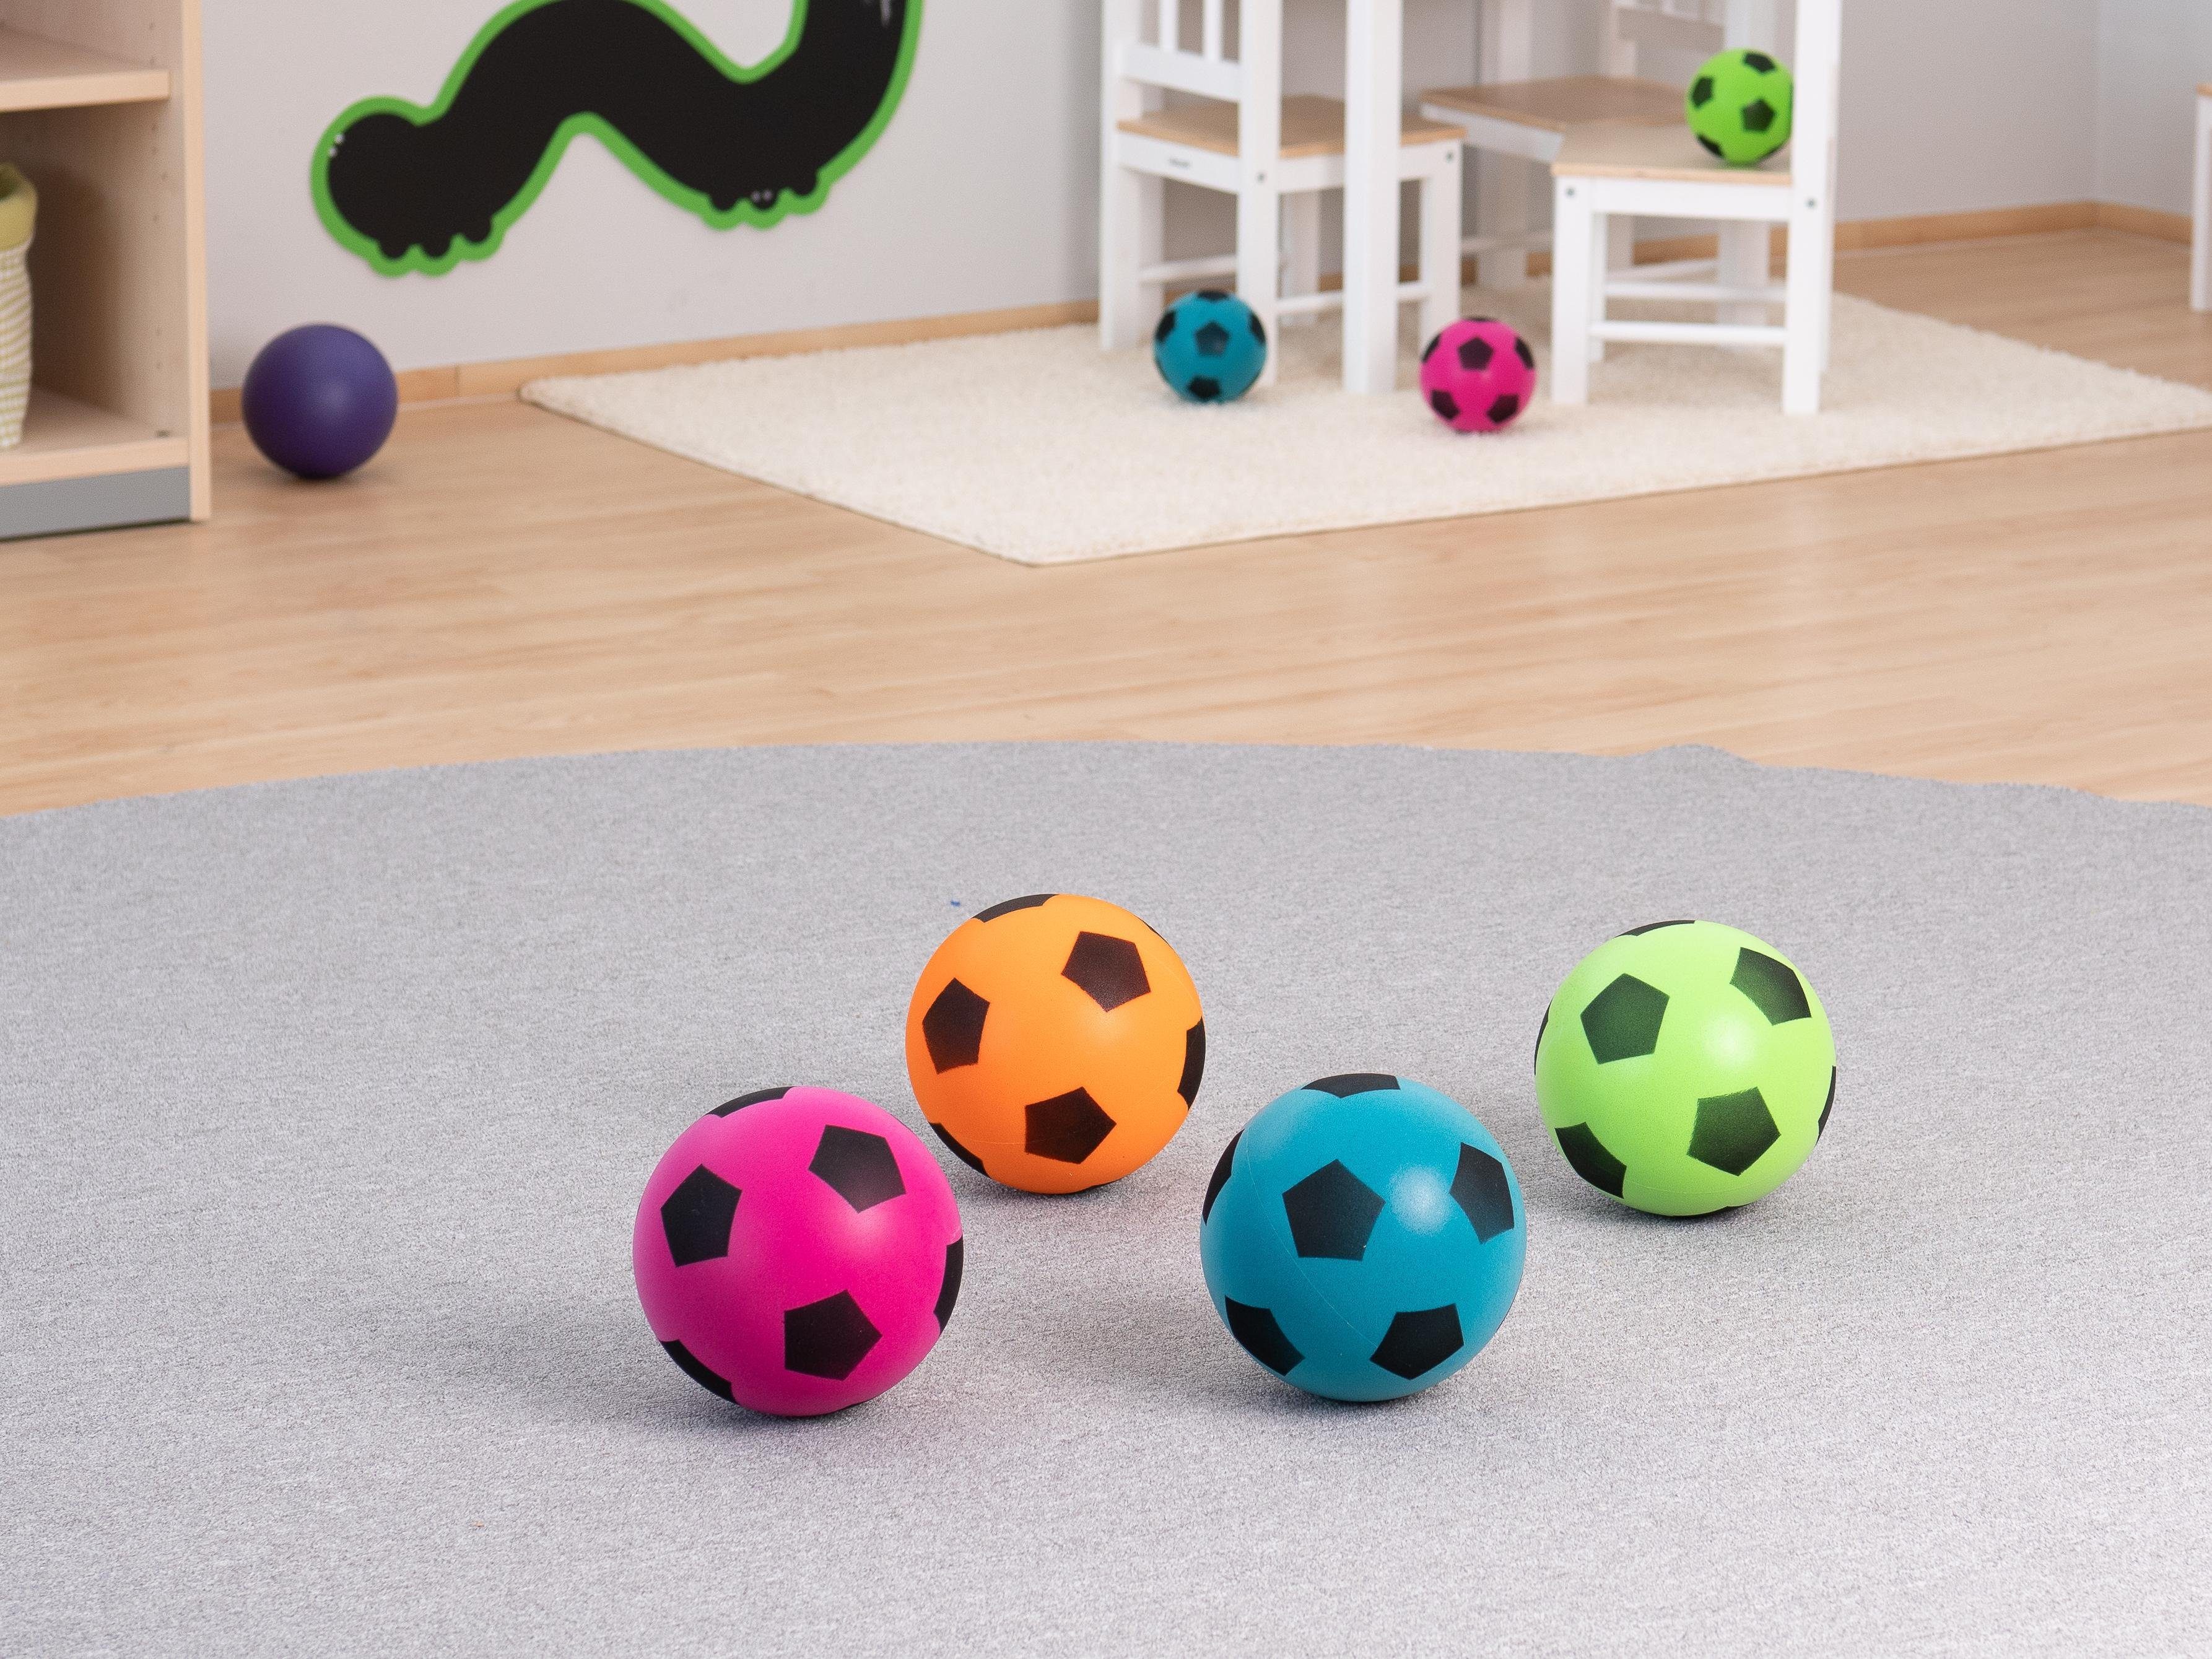 Spielball - 4er-Set Sport Softbälle Kinder-Softball Schaumstoffball weicher Betzold Softball